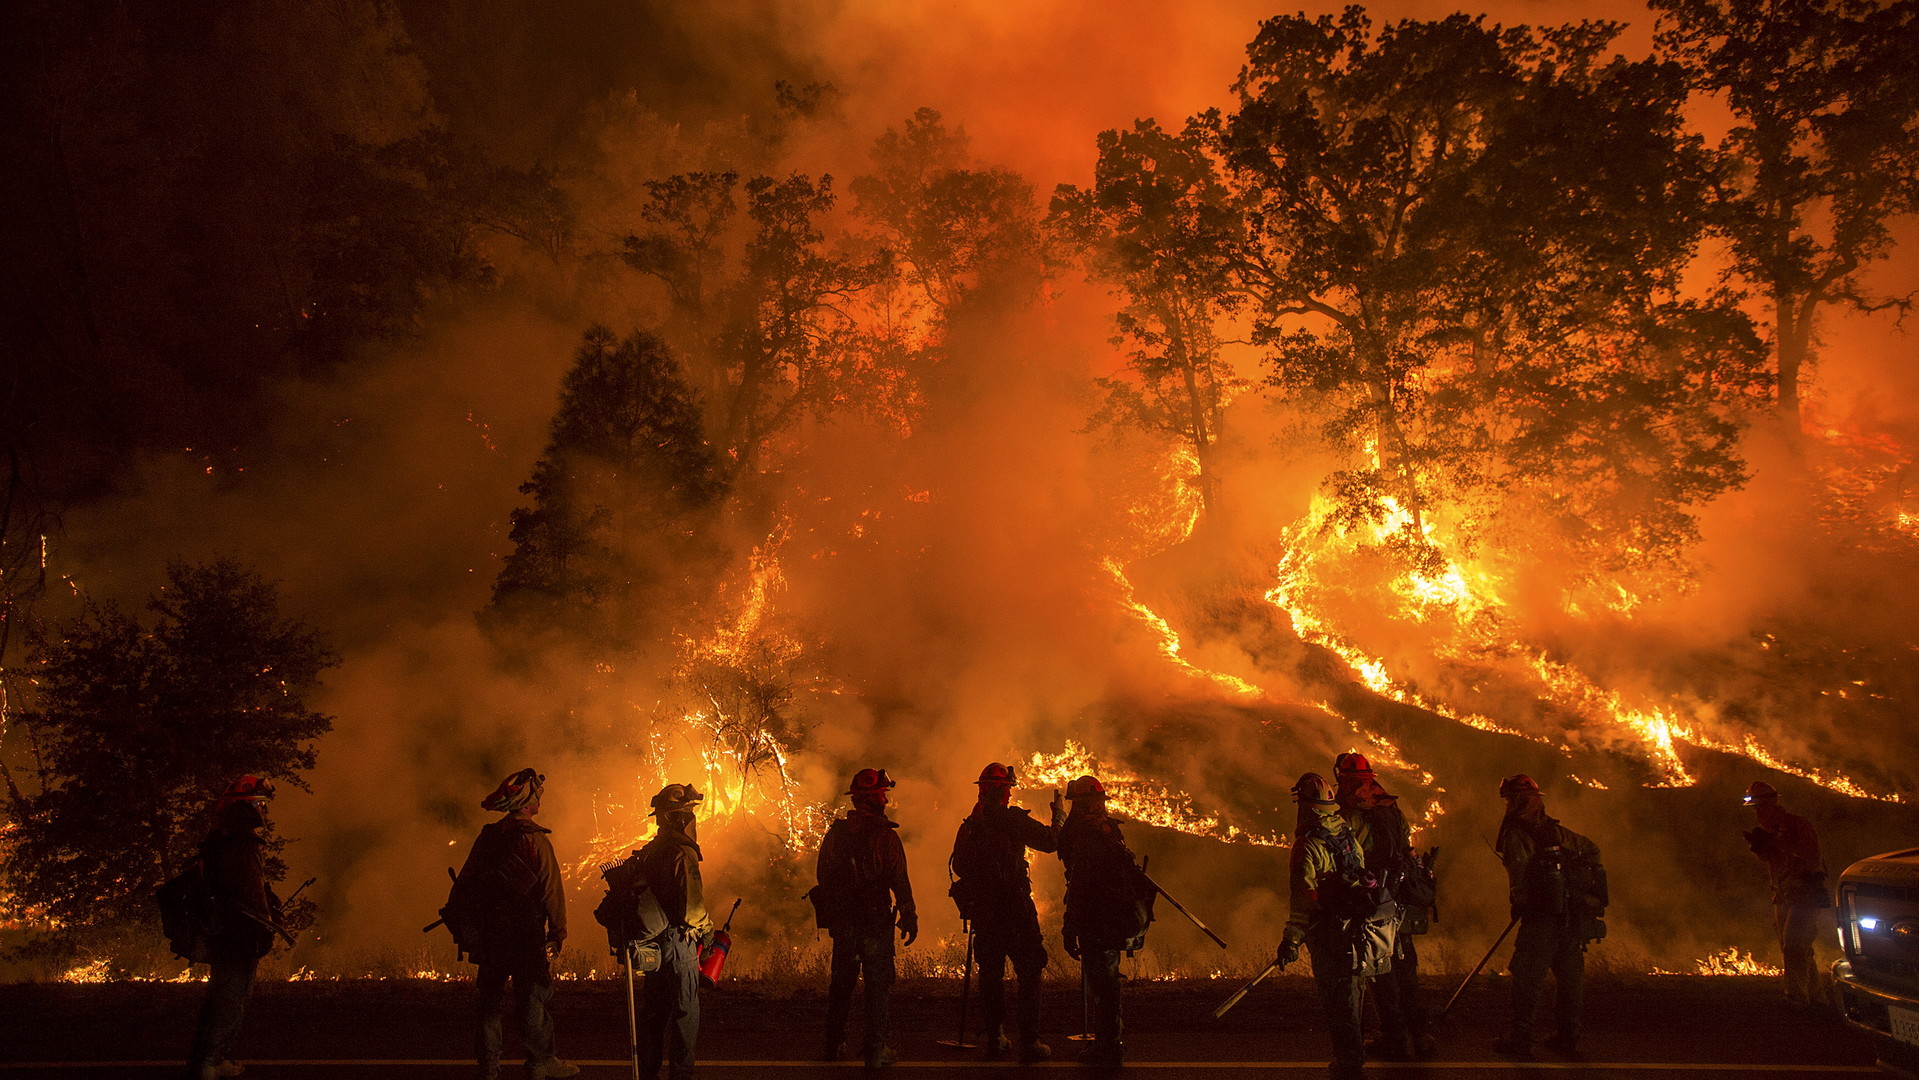 De grands incendies de forêt en Californie ont tué une personne alors que les pompiers ont bien du mal à lutter contre le feu qui gagne du terrain. Les photos montrent des forêts en feu et des maisons complètement détruites par le feu dévastateur.